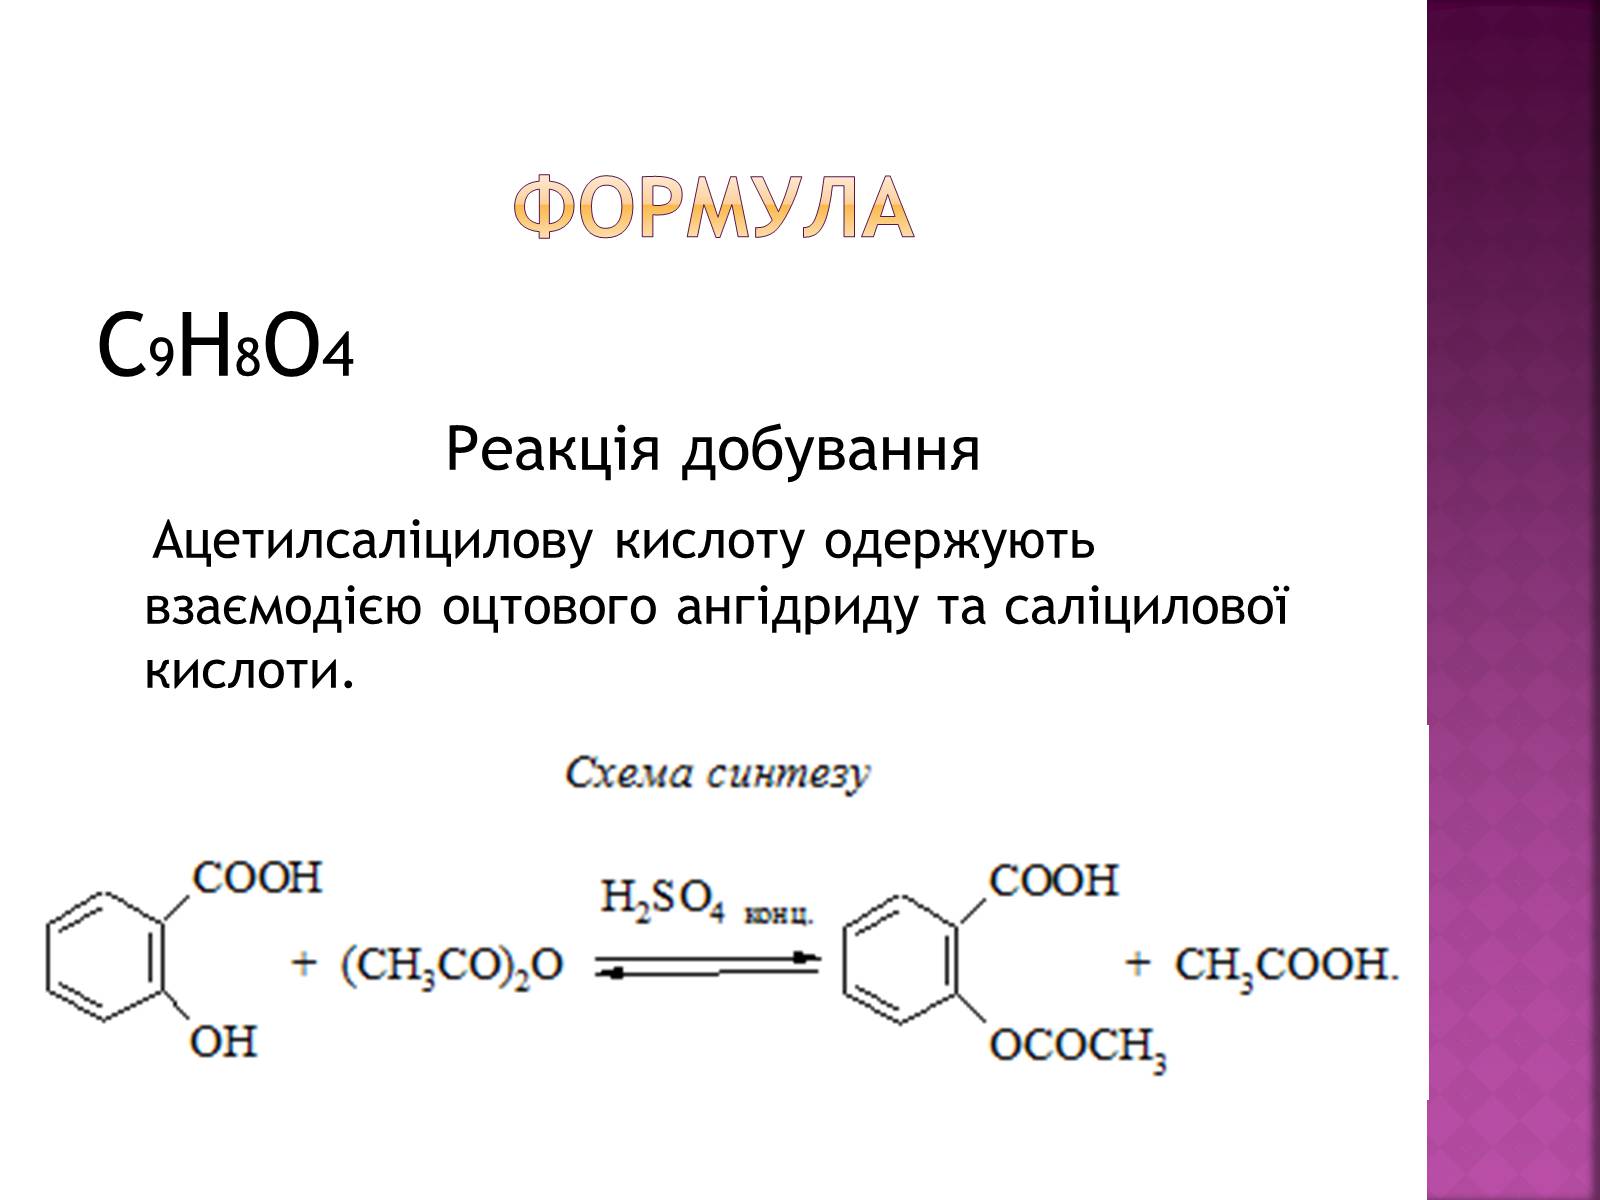 Формула адипиновой кислоты. Гександиовая кислота. Нитрил гександиовой кислоты. Восстановление нитрила гександиовой кислоты. Нитрила адипиновой гександиовой кислоты водородом.